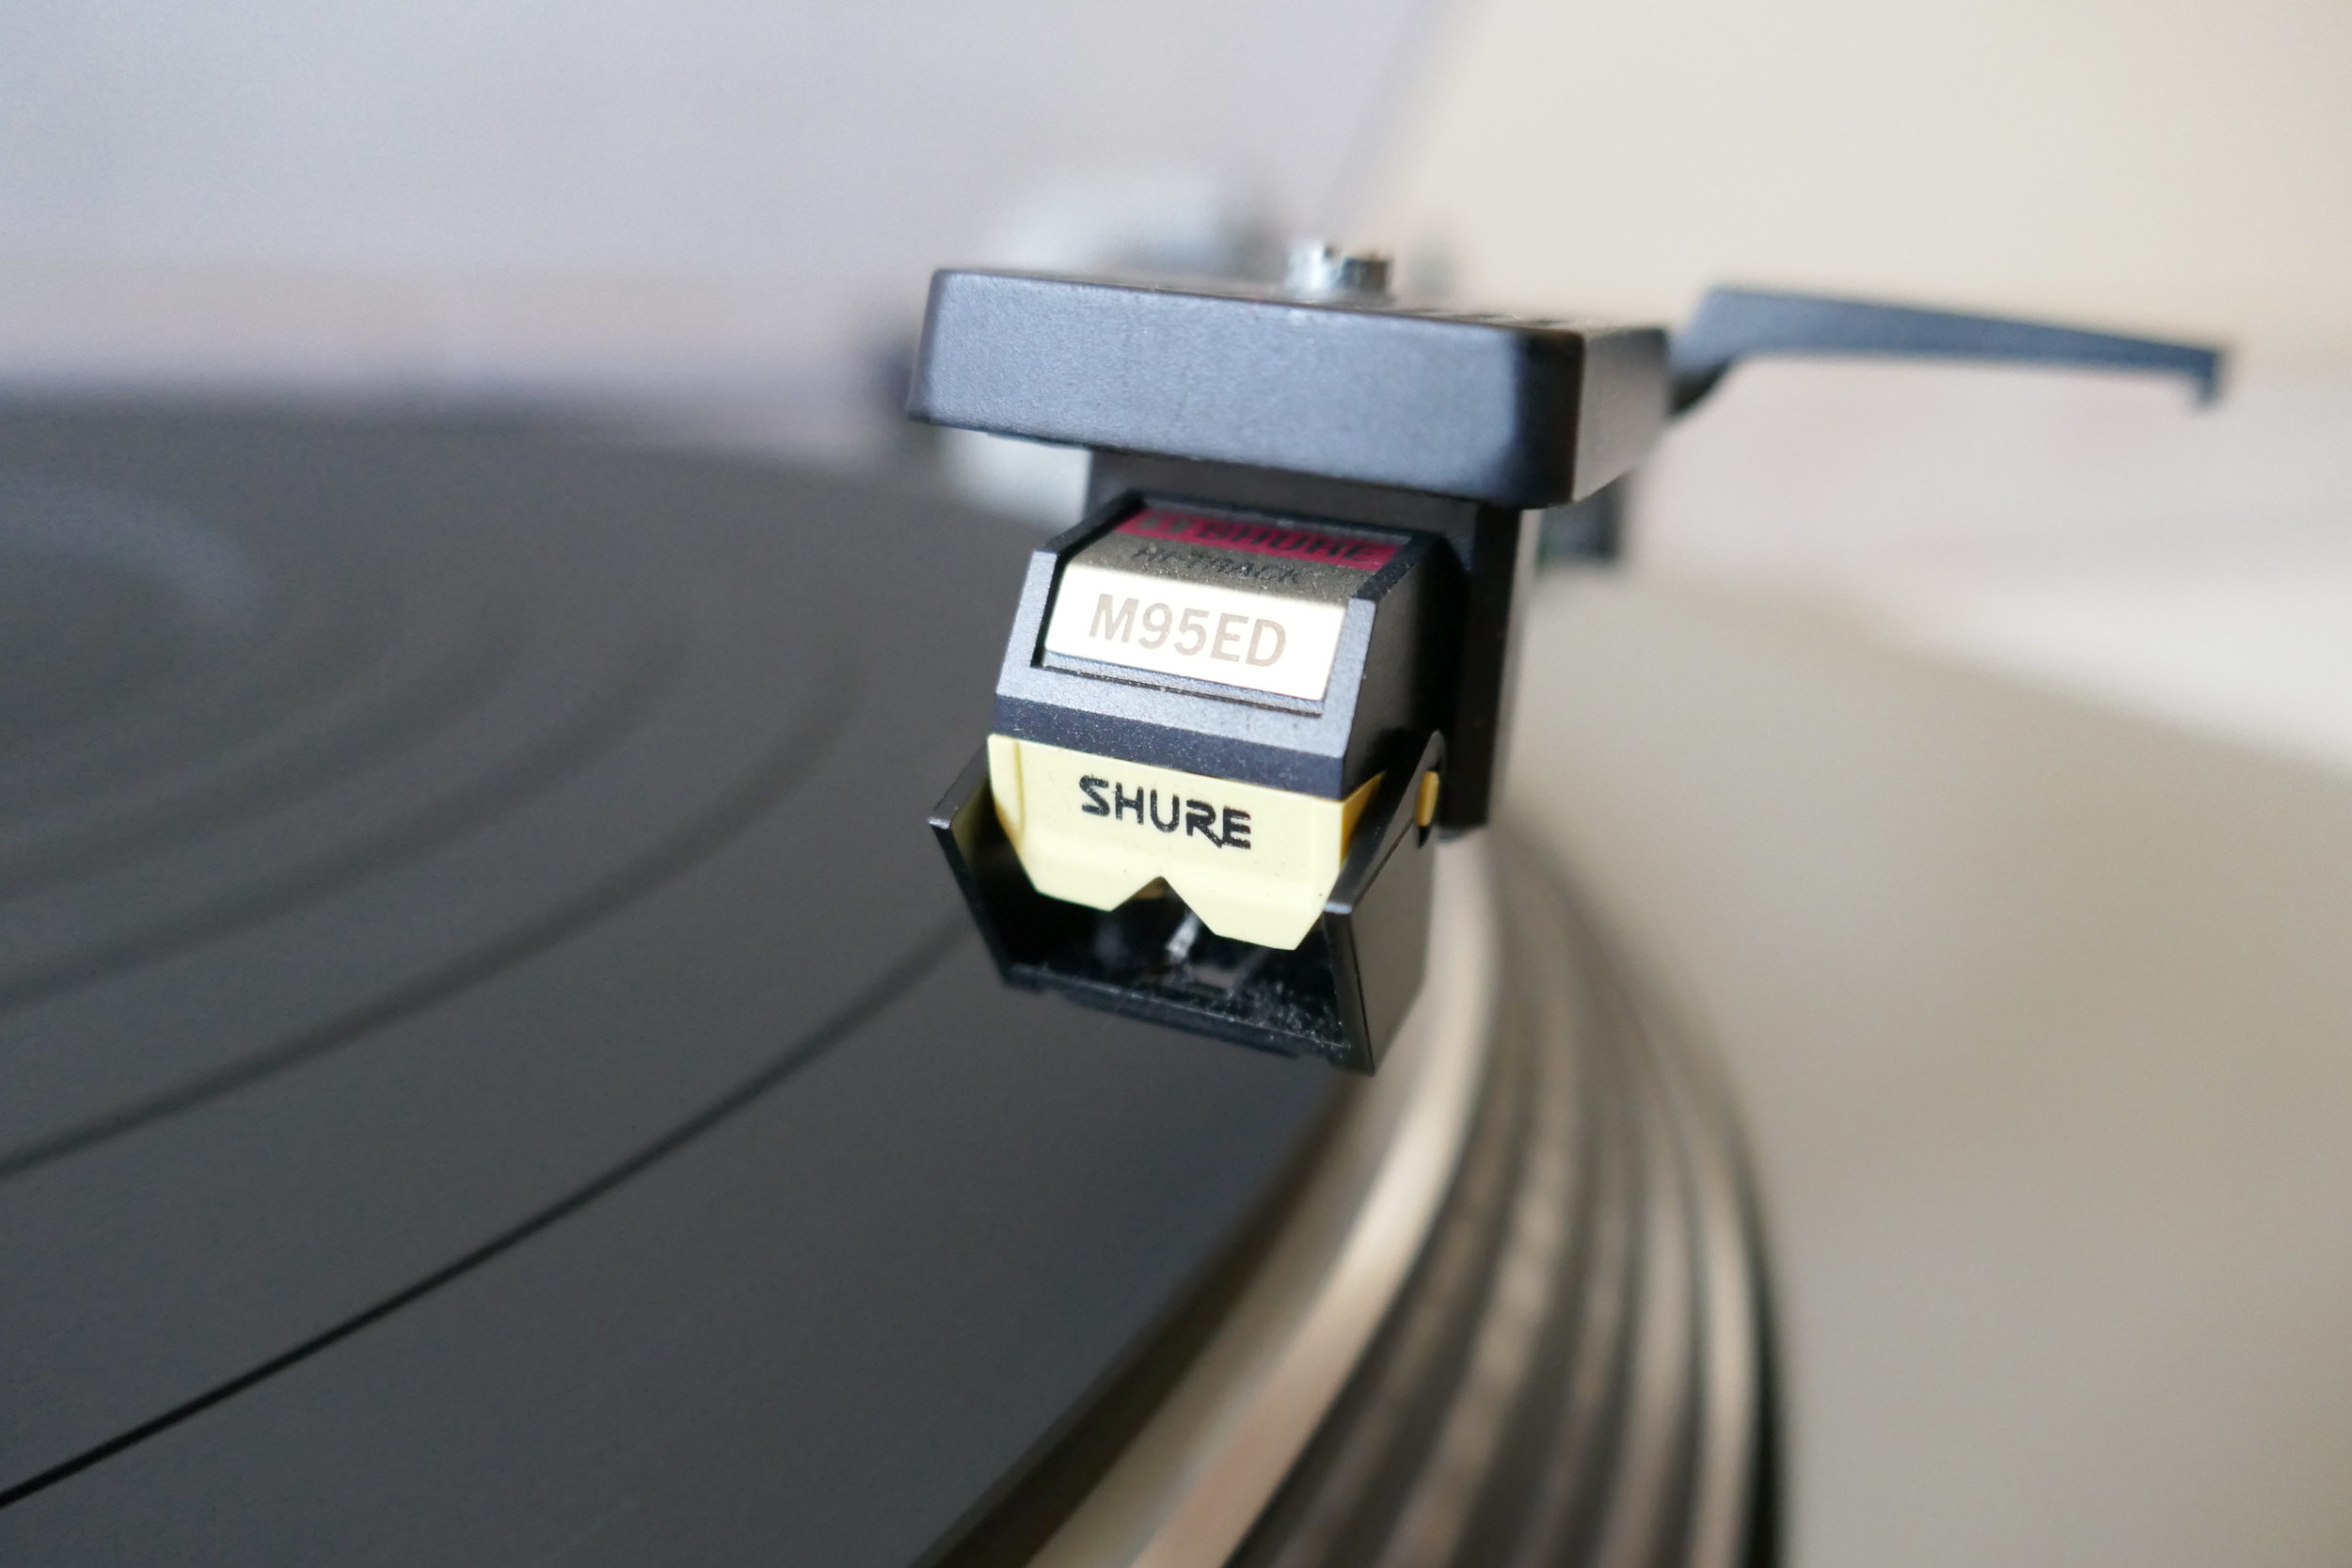 platine vinyle turntable technics SL-1700 vintage occasion